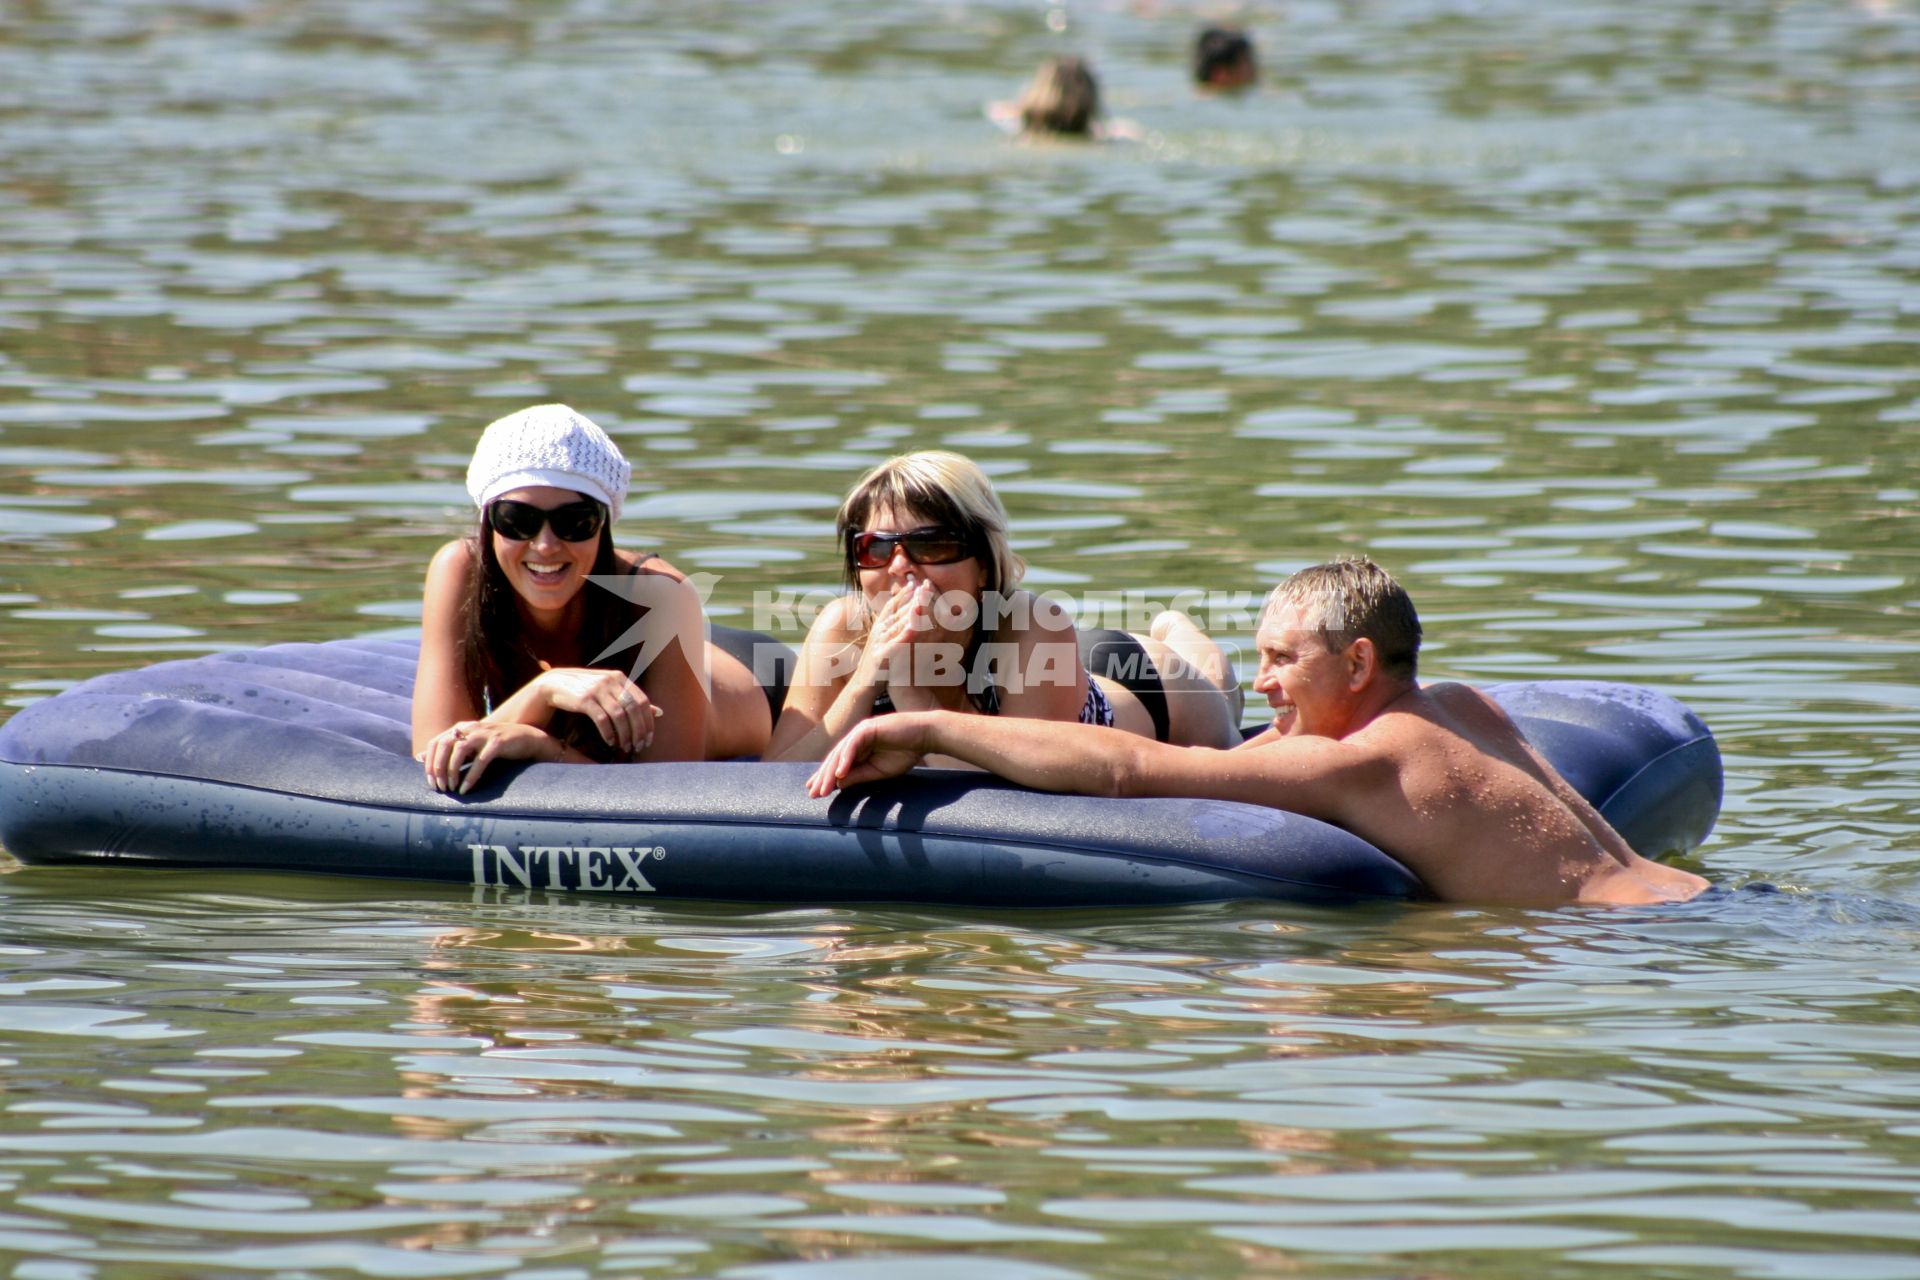 Две девушки лежат на водном матраце `INTEX`, к ним подплыл мужчина.